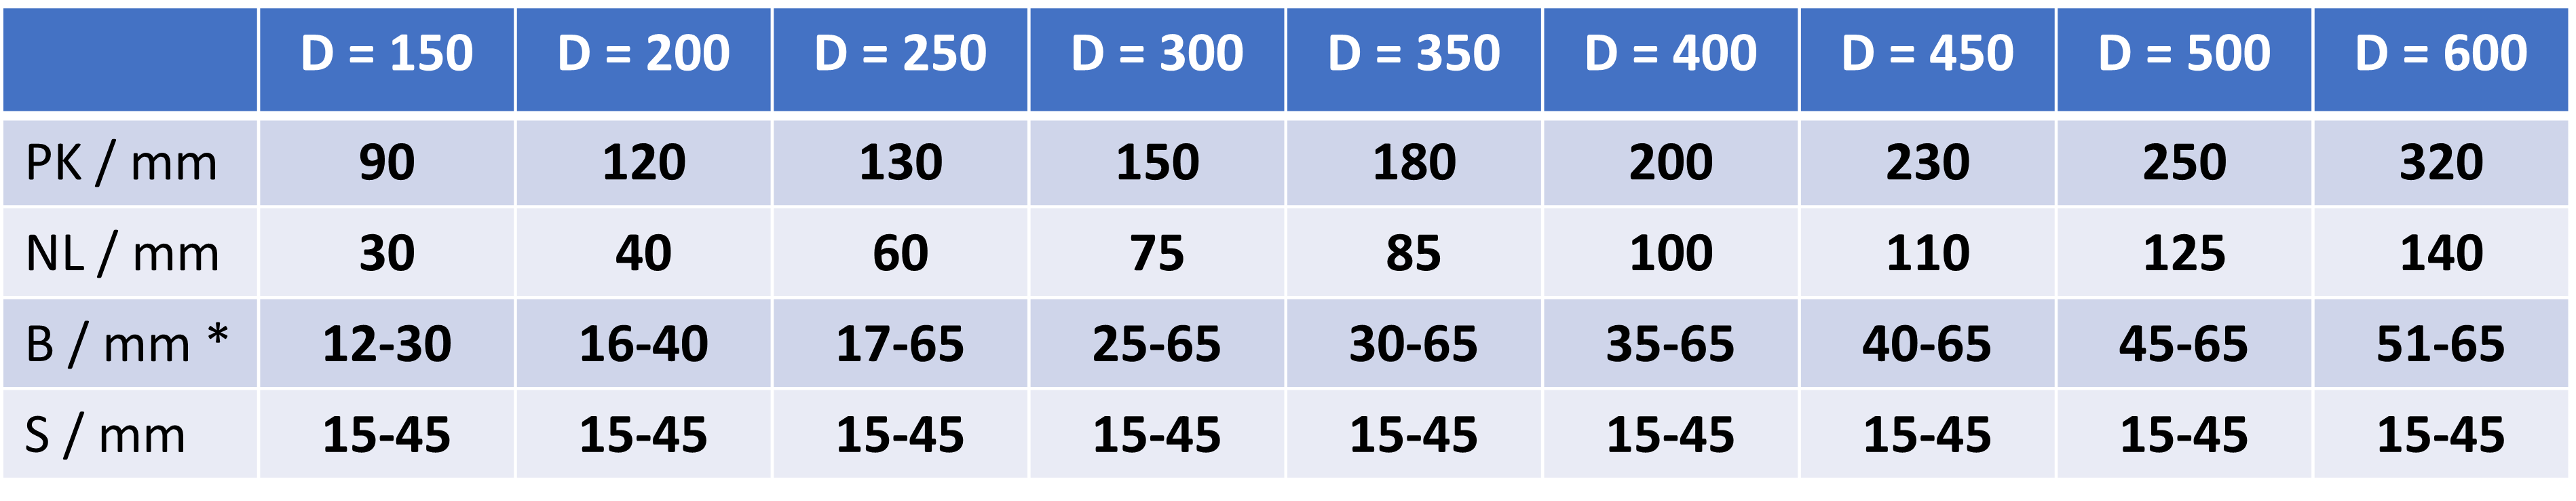 Vorpolierbürste Sisal Kordel Dimensionen Tabelle